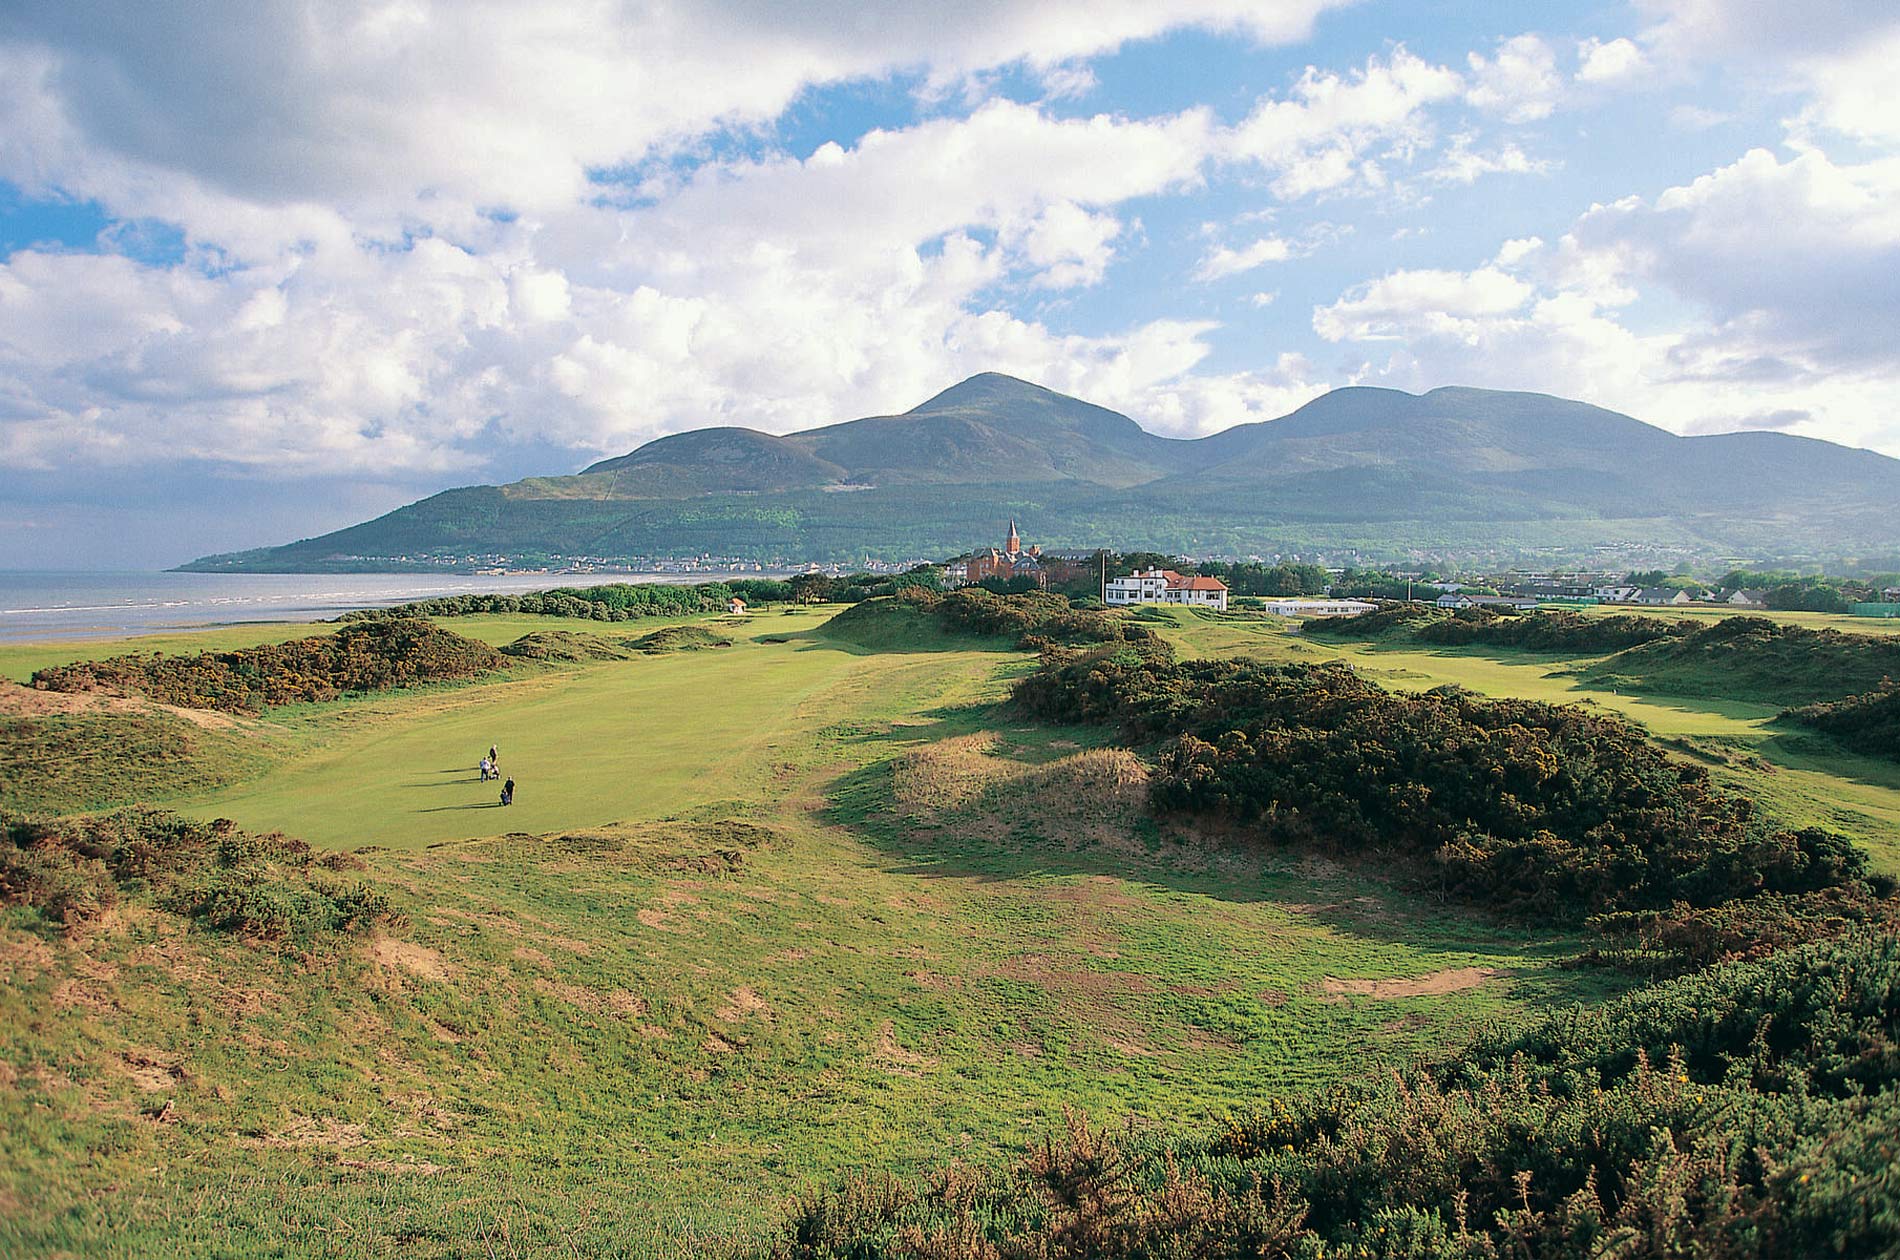 Golf in Northern Ireland